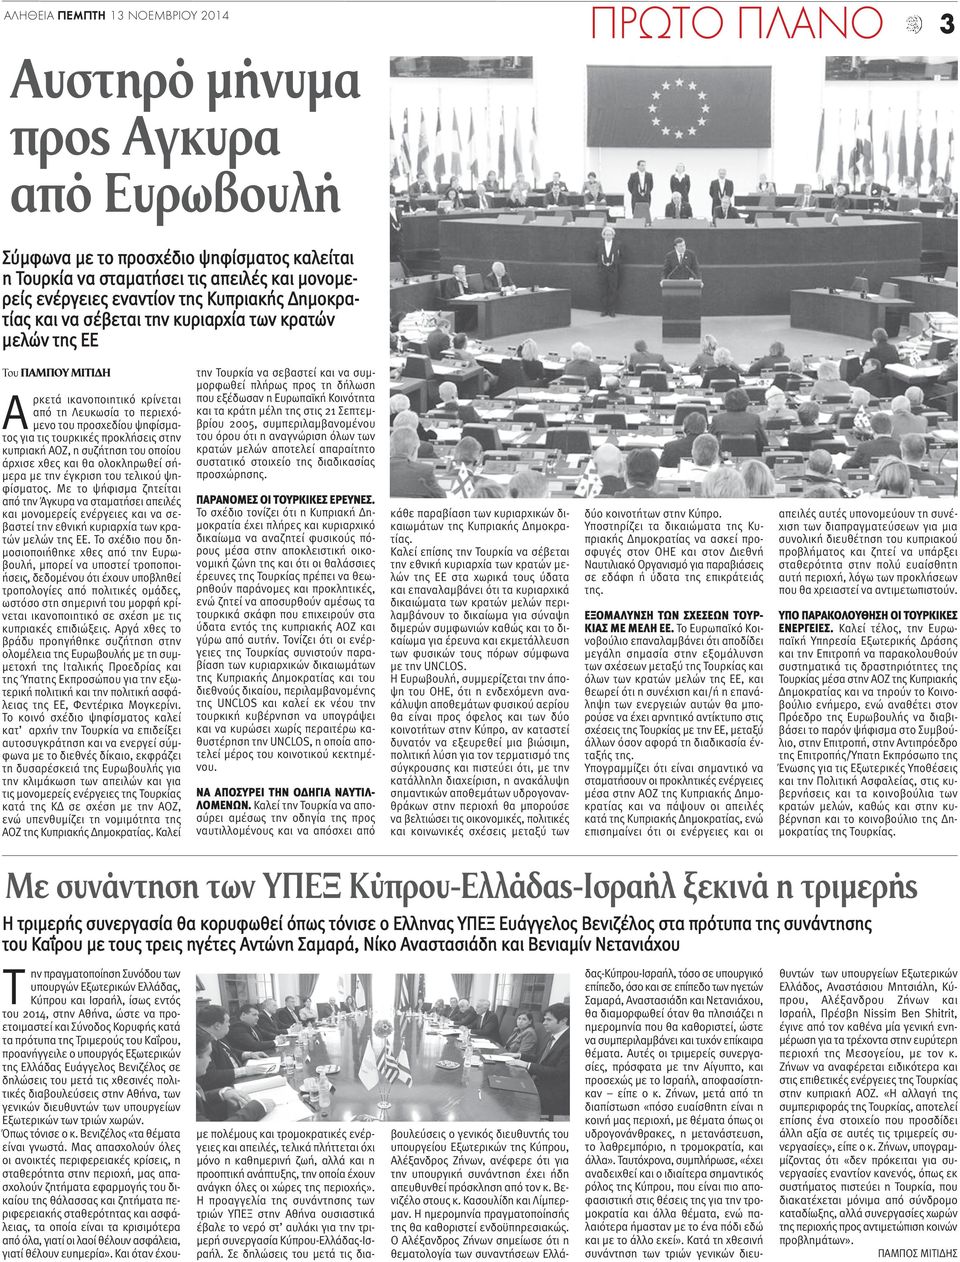 τις τουρκικές προκλήσεις στην κυπριακή ΑΟΖ, η συζήτηση του οποίου άρχισε χθες και θα ολοκληρωθεί σήμερα με την έγκριση του τελικού ψηφίσματος.